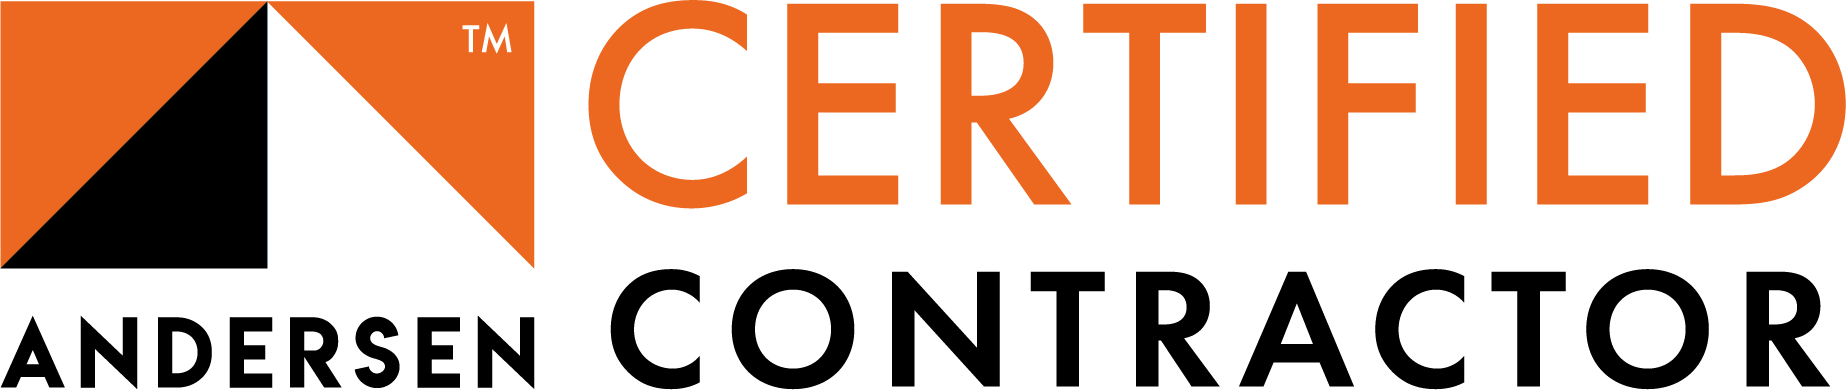 Andersen Certified Contractor Logo.